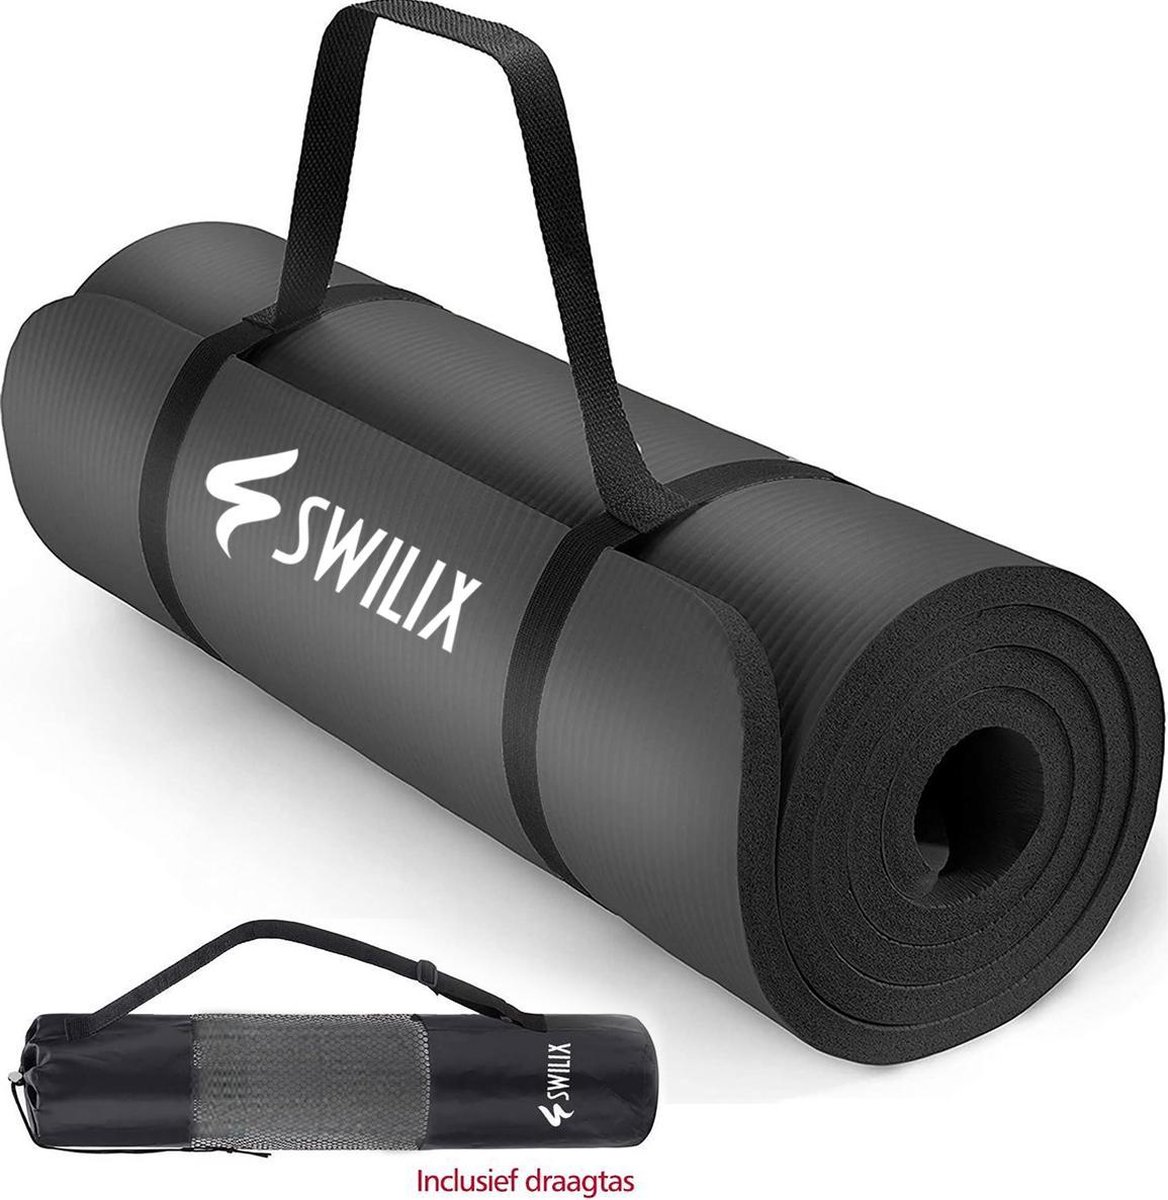 SWILIX® Yoga Mat 15mm - Fitnessmat - 190 x 66 cm Groot Sportmat - Incl. Draagriem En Draagtas - Zwart